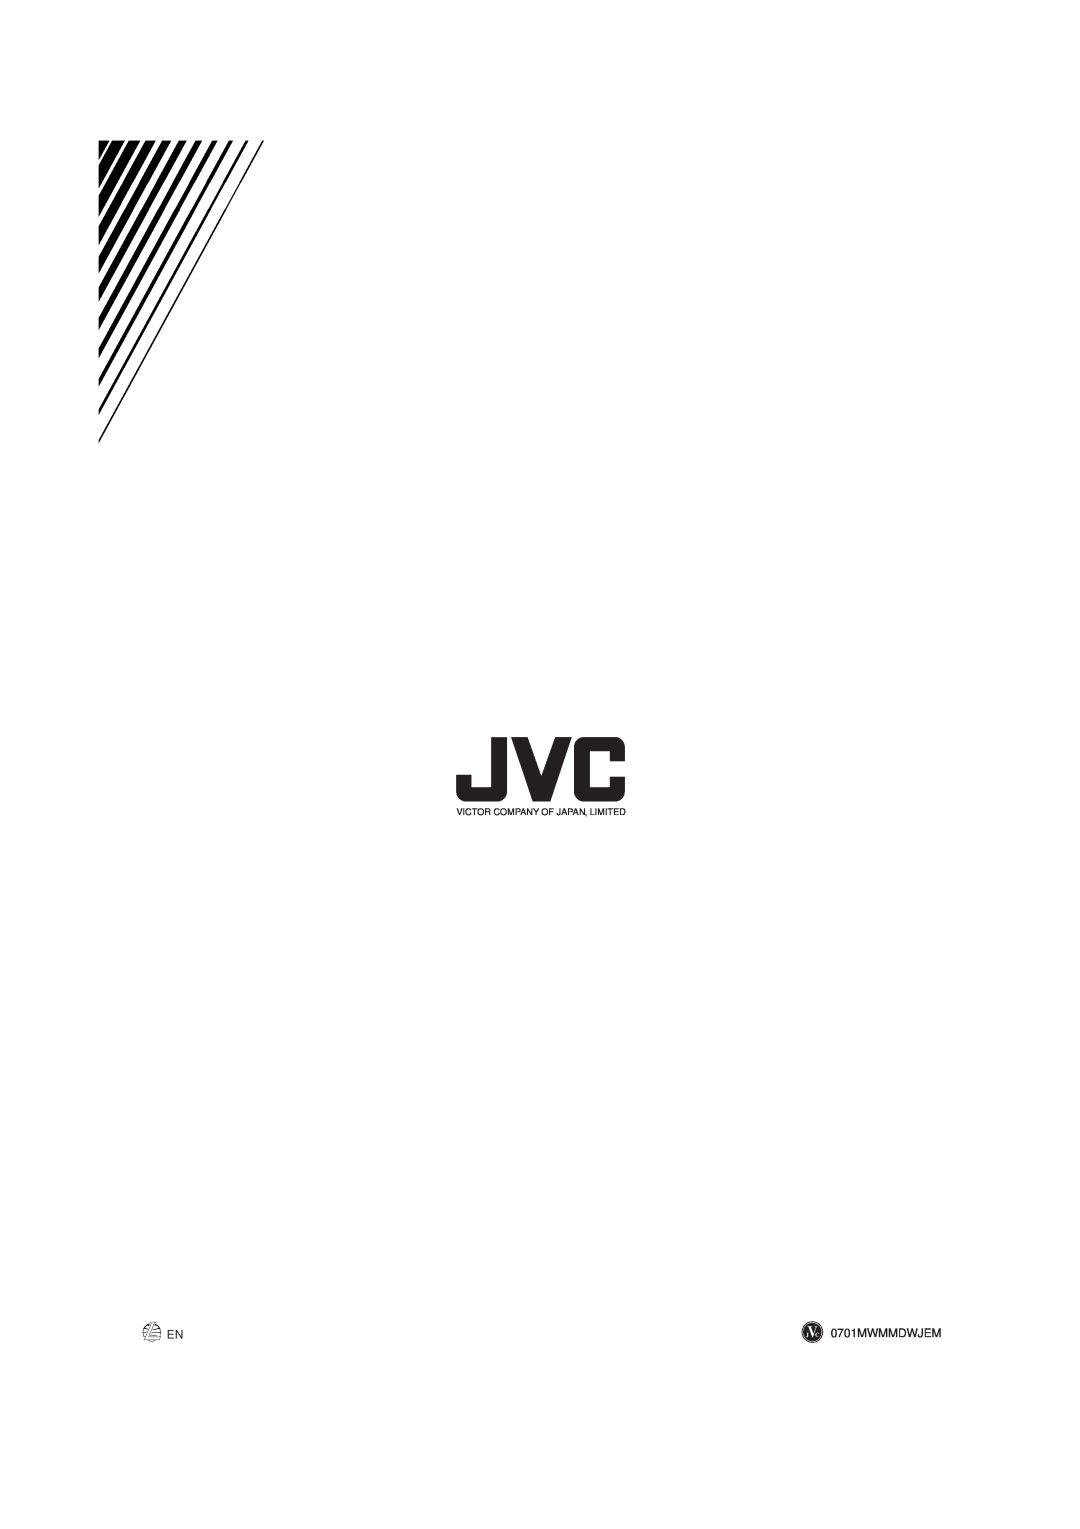 JVC MX-DVA9 manual 0701MWMMDWJEM, Victor Company Of Japan, Limited 